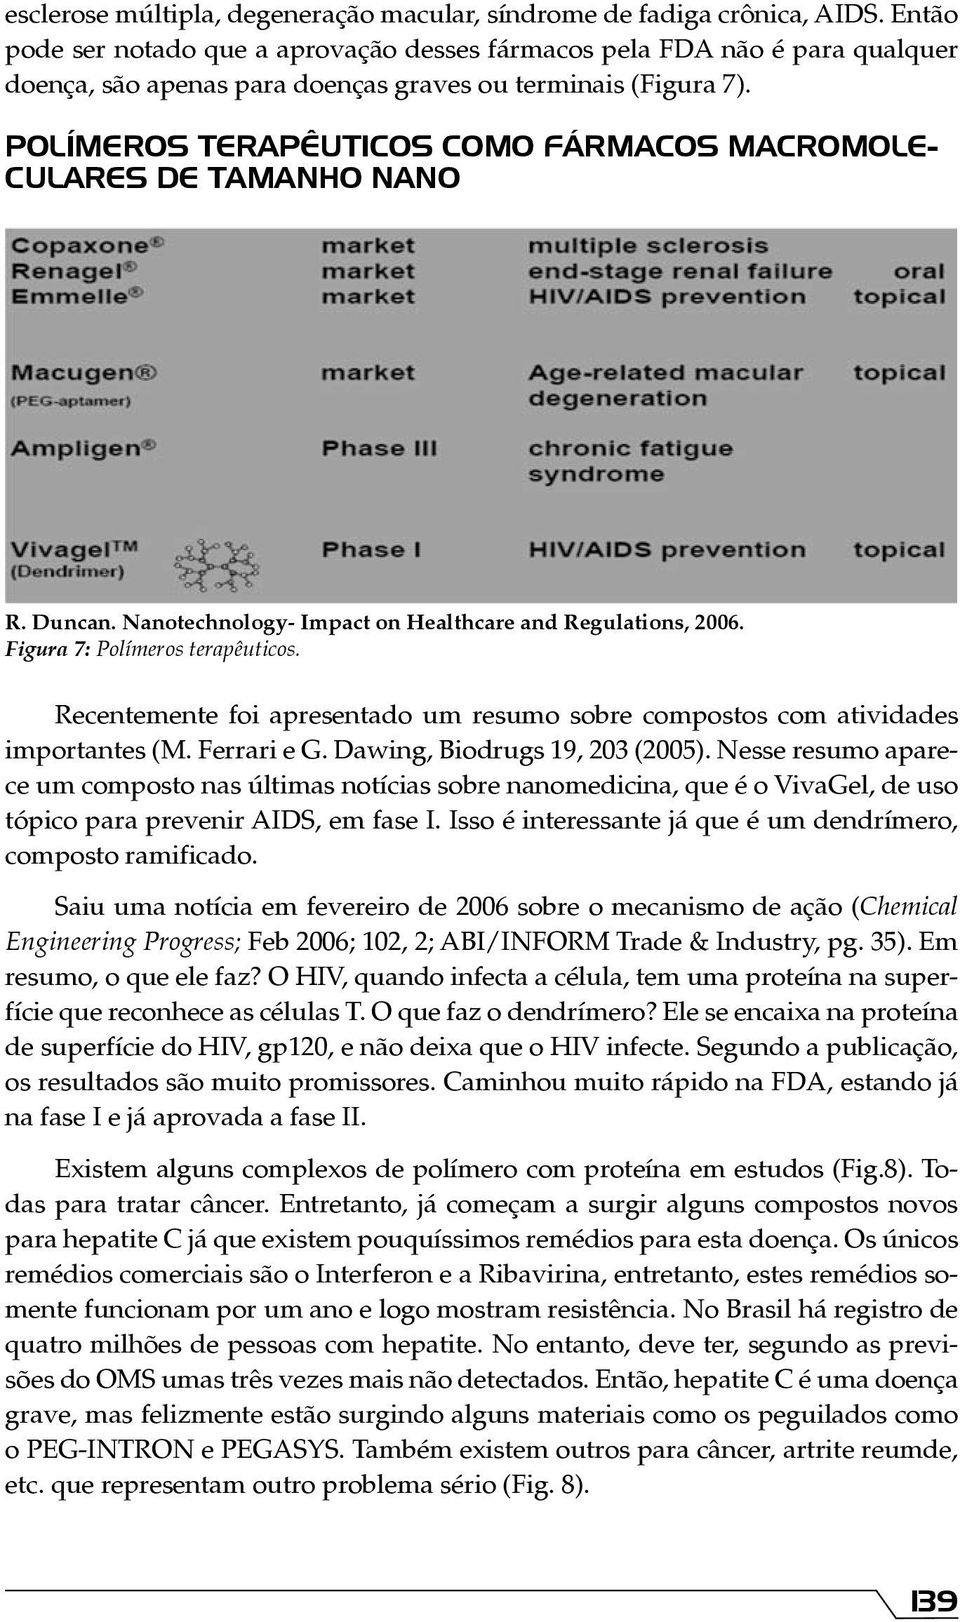 POLÍMEROS TERAPÊUTICOS COMO FÁRMACOS MACROMOLE- CULARES DE TAMANHO NANO R. Duncan. Nanotechnology- Impact on Healthcare and Regulations, 2006. Figura 7: Polímeros terapêuticos.